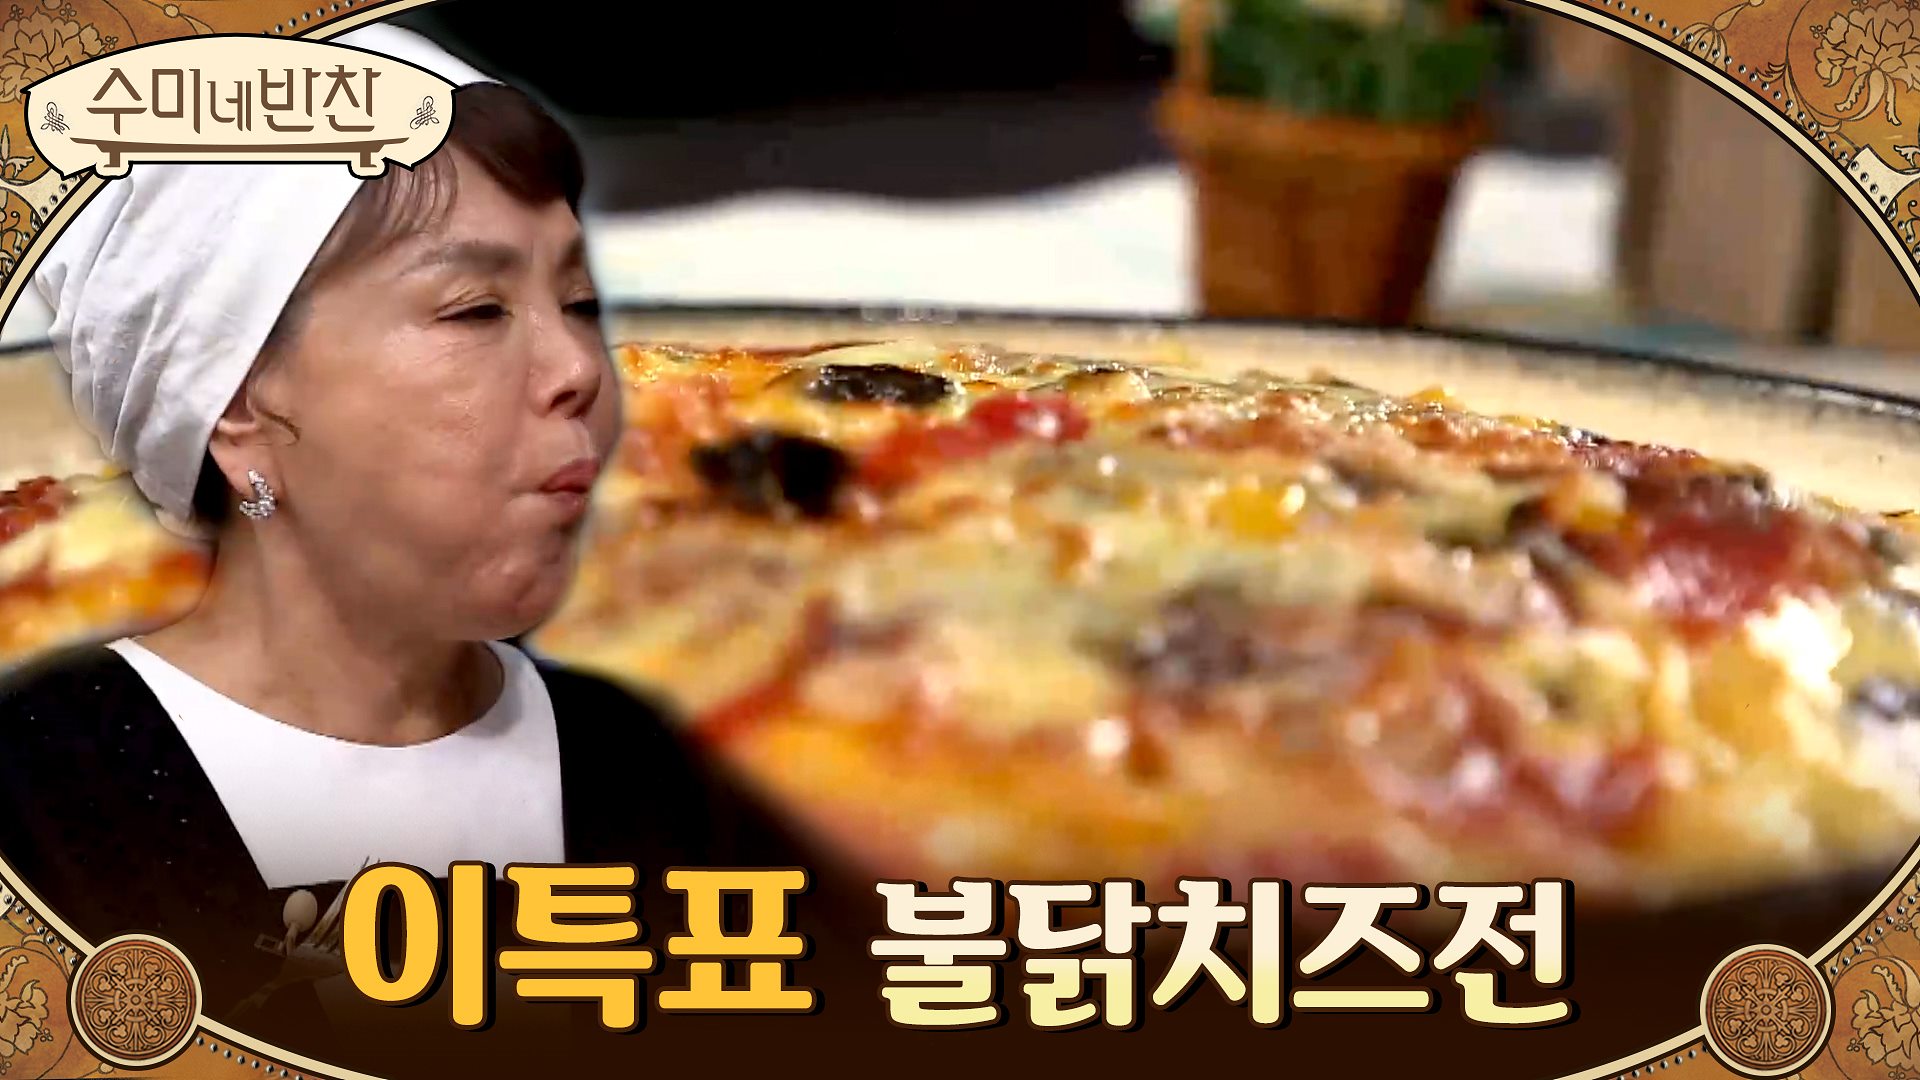 한국인이 사랑하는 불닭면으로 초간단 치즈전 만드는 법! '불닭 치즈전' | Olive 210311 방송